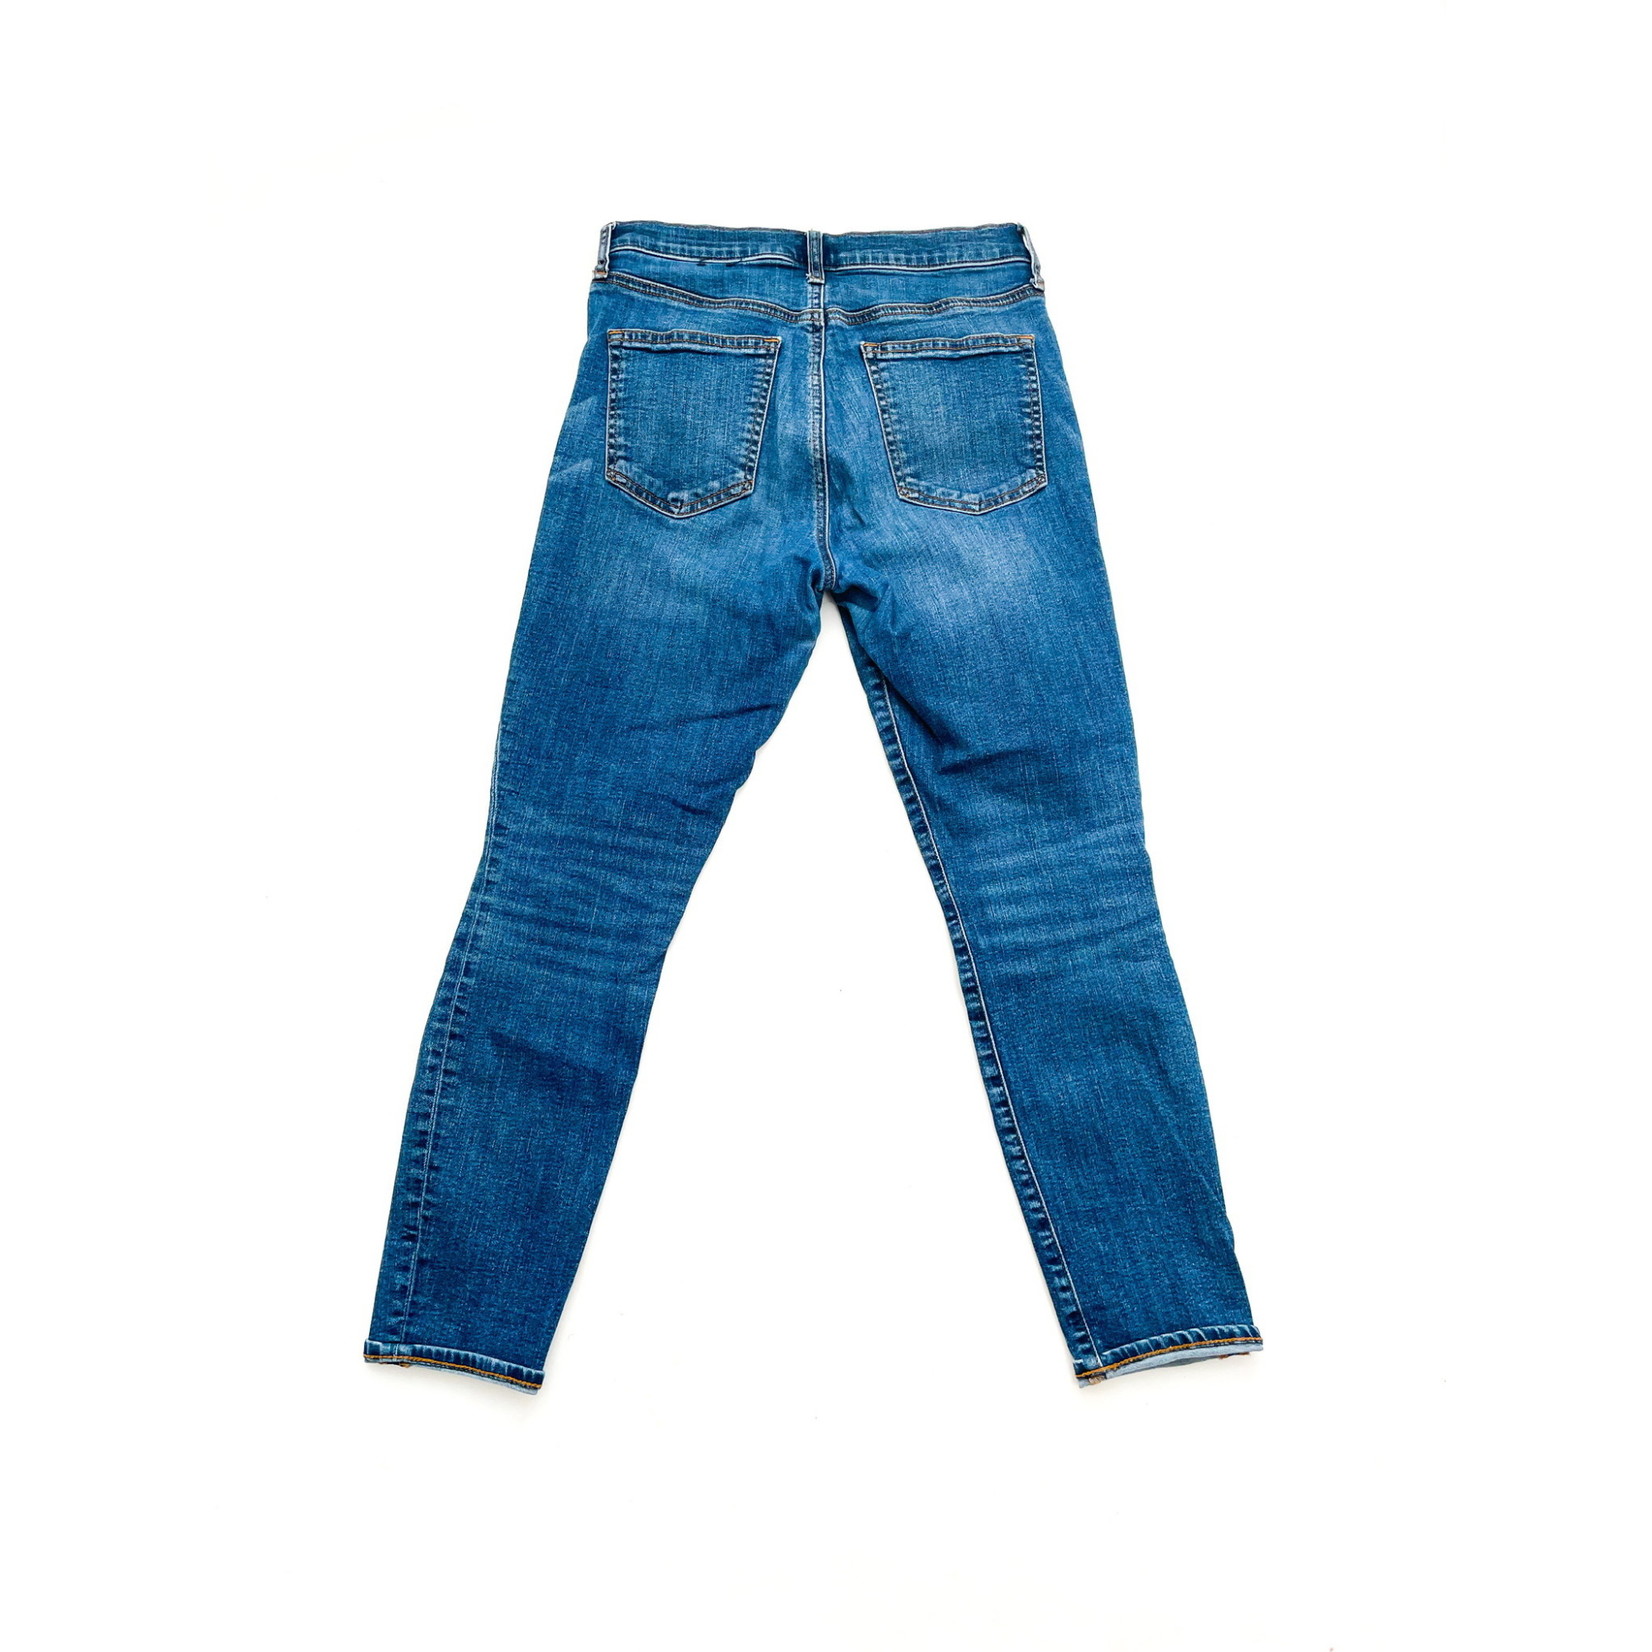 Gap Gap True Skinny Crop Jeans - Size 6/28